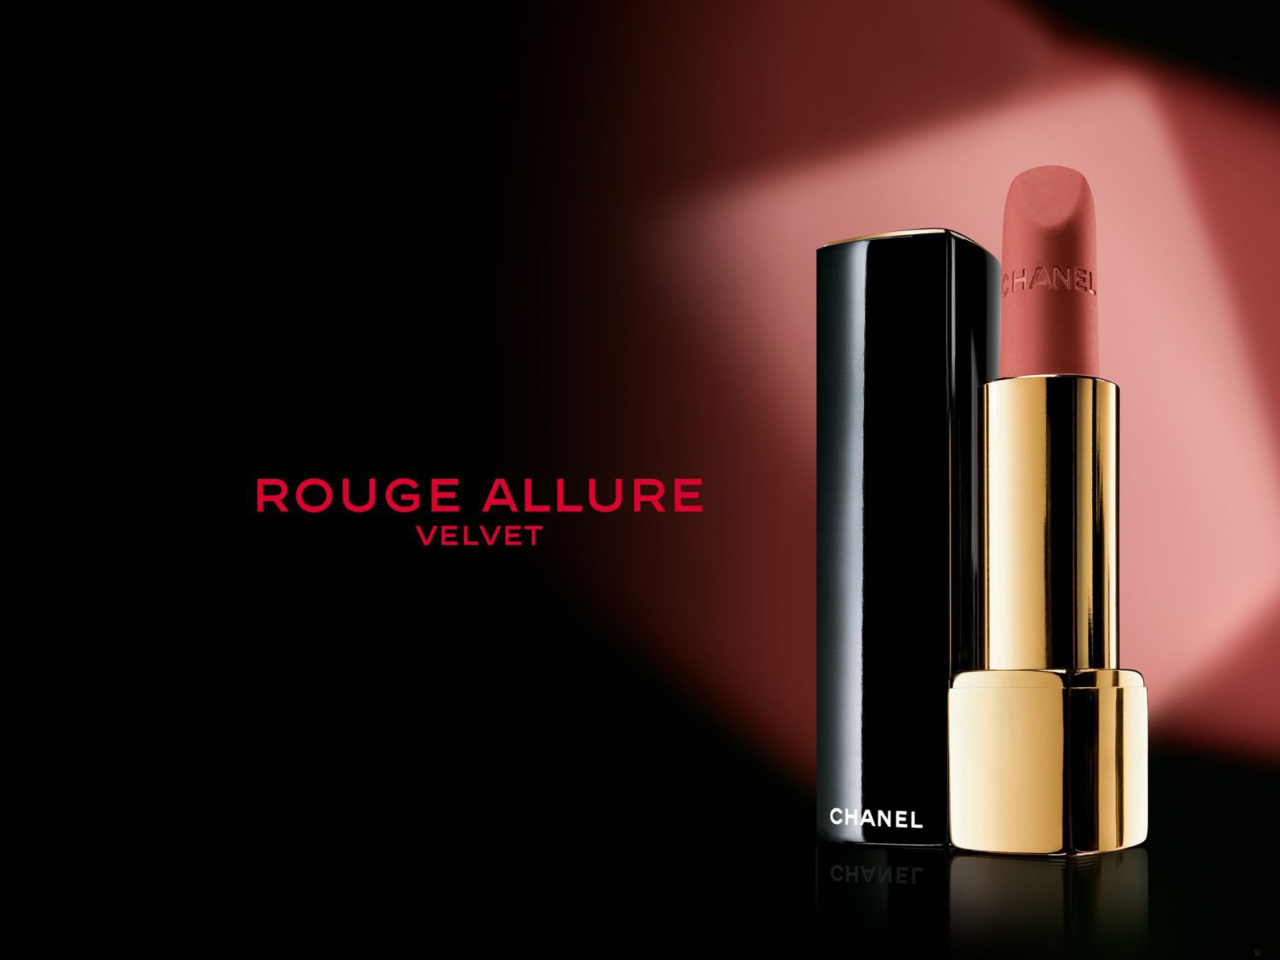 Sfondi Chanel Rouge Allure Velvet 1280x960